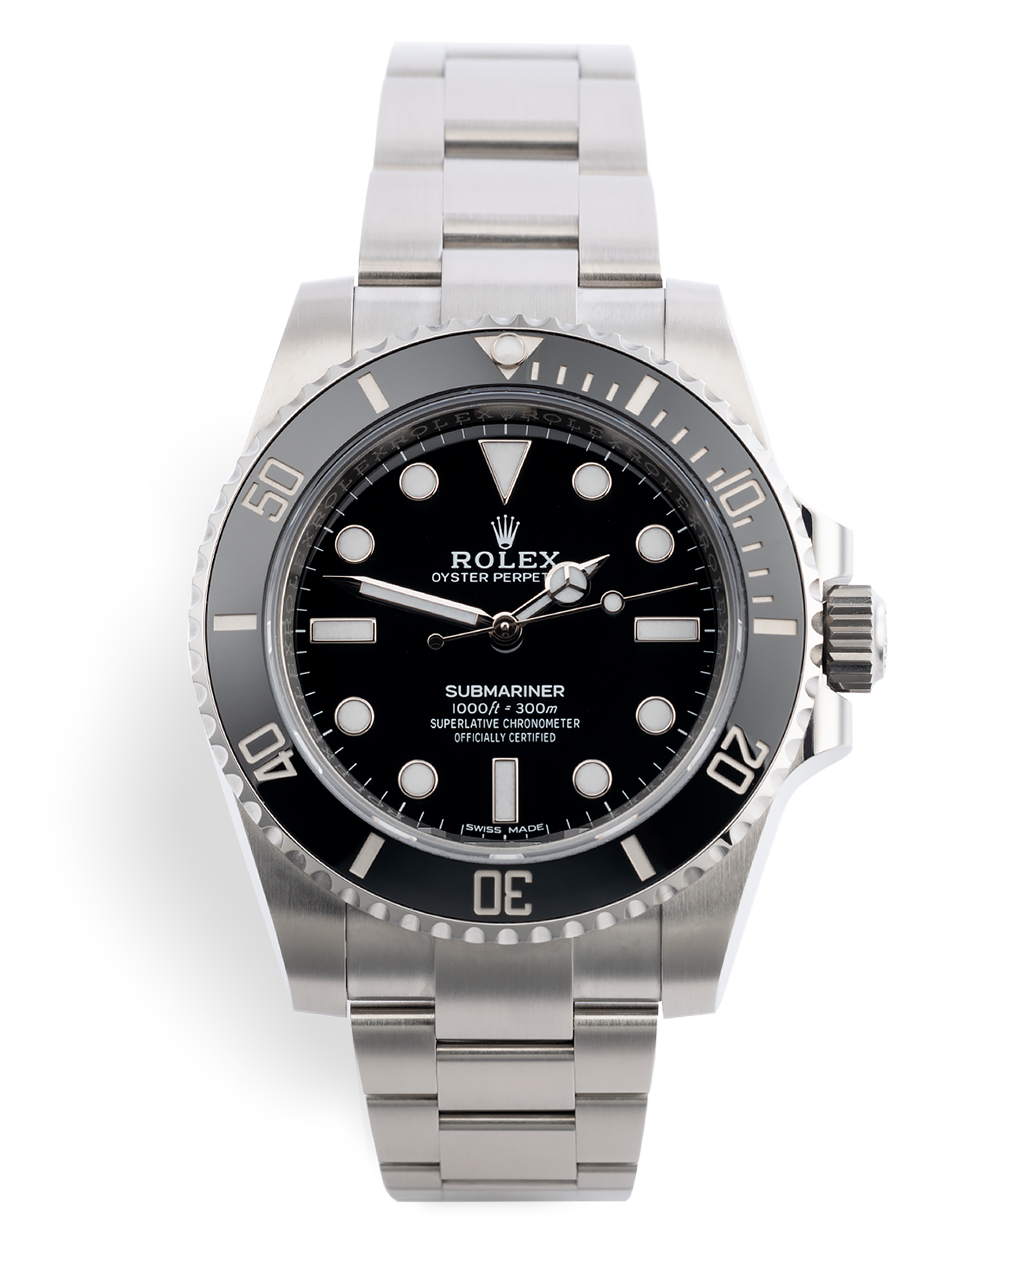 Rolex Submariner Watches ref 114060 5 Year Warranty to 2025 The